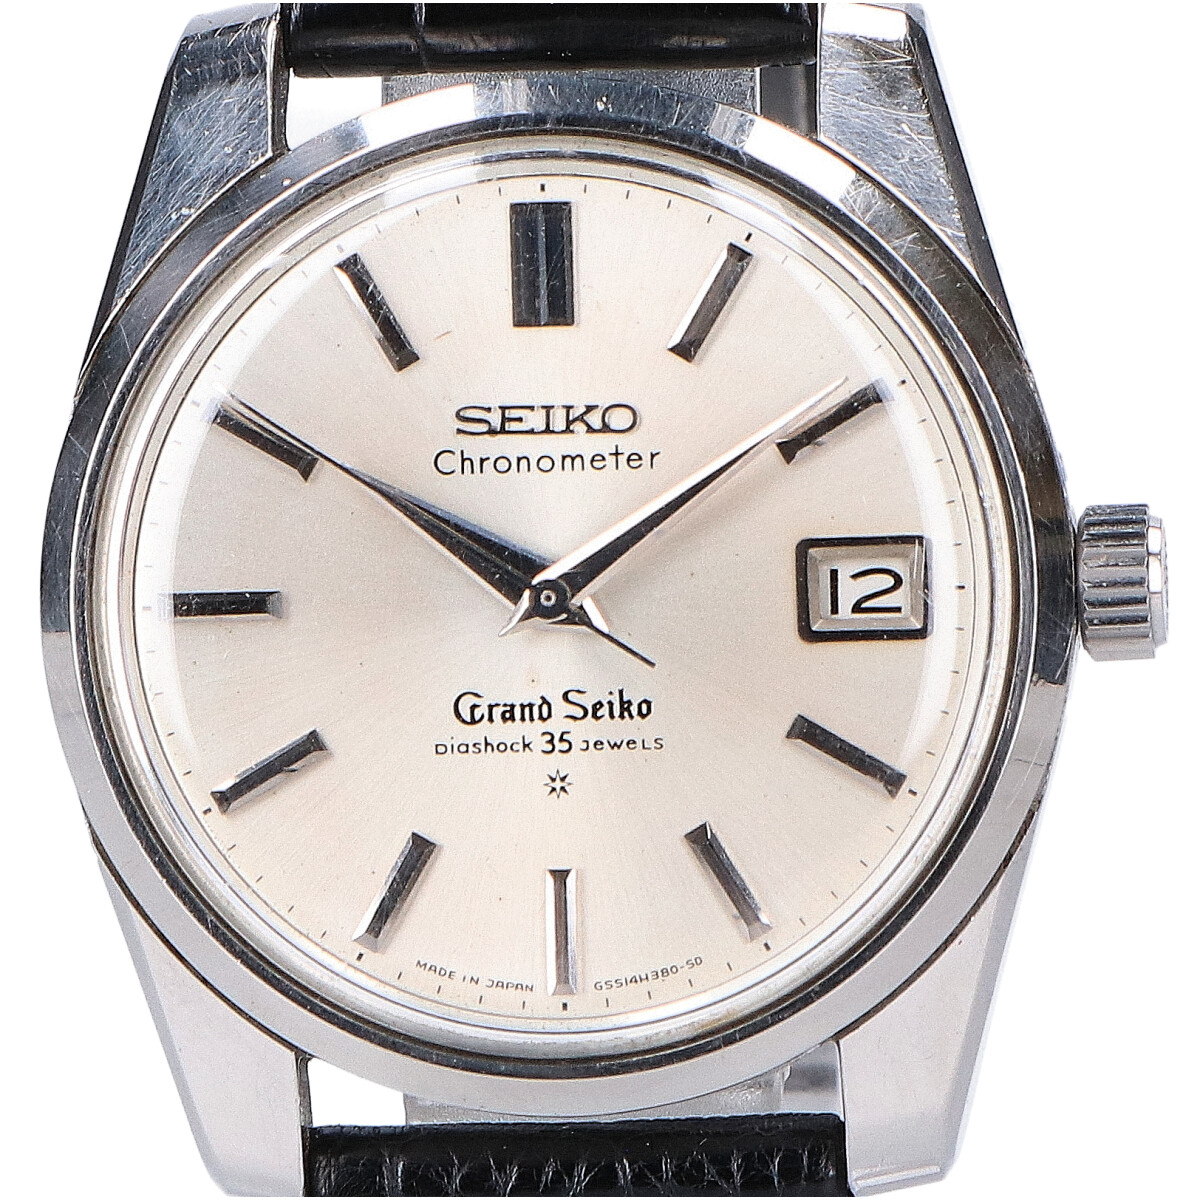 グランドセイコーのS/S Cal.430 43999 クロノメーター セカンドモデル 手巻き腕時計の買取実績です。